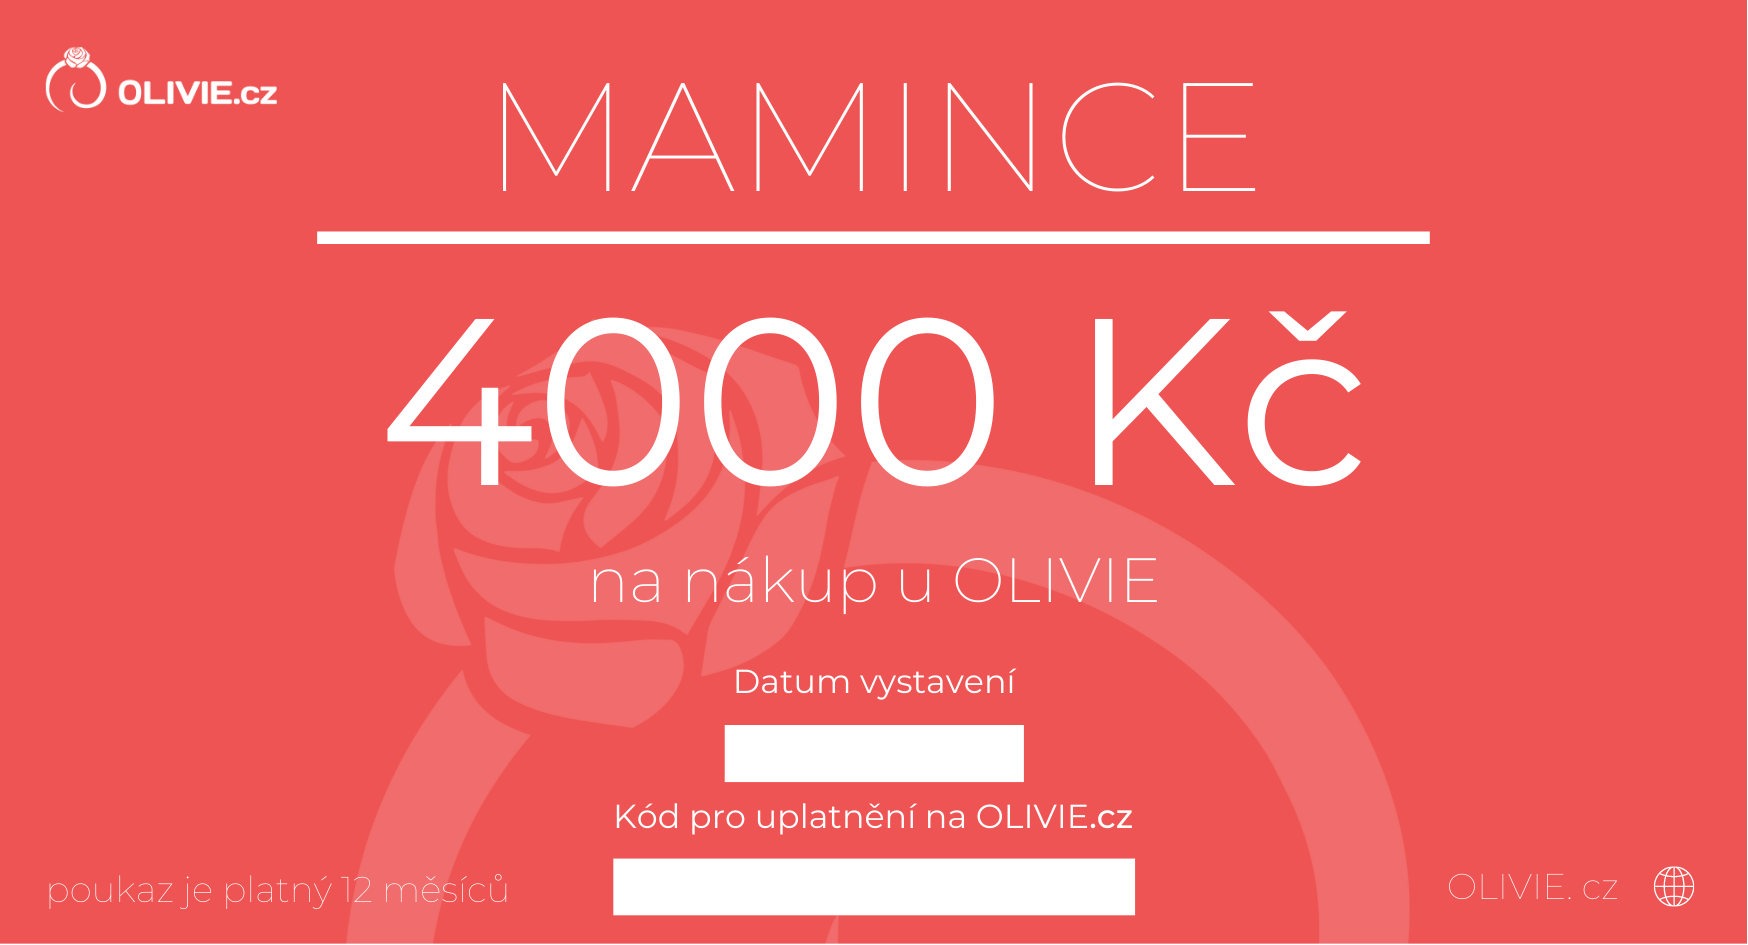 OLIVIE Elektronický dárkový poukaz MAMINCE Hodnota: 4000 Kč